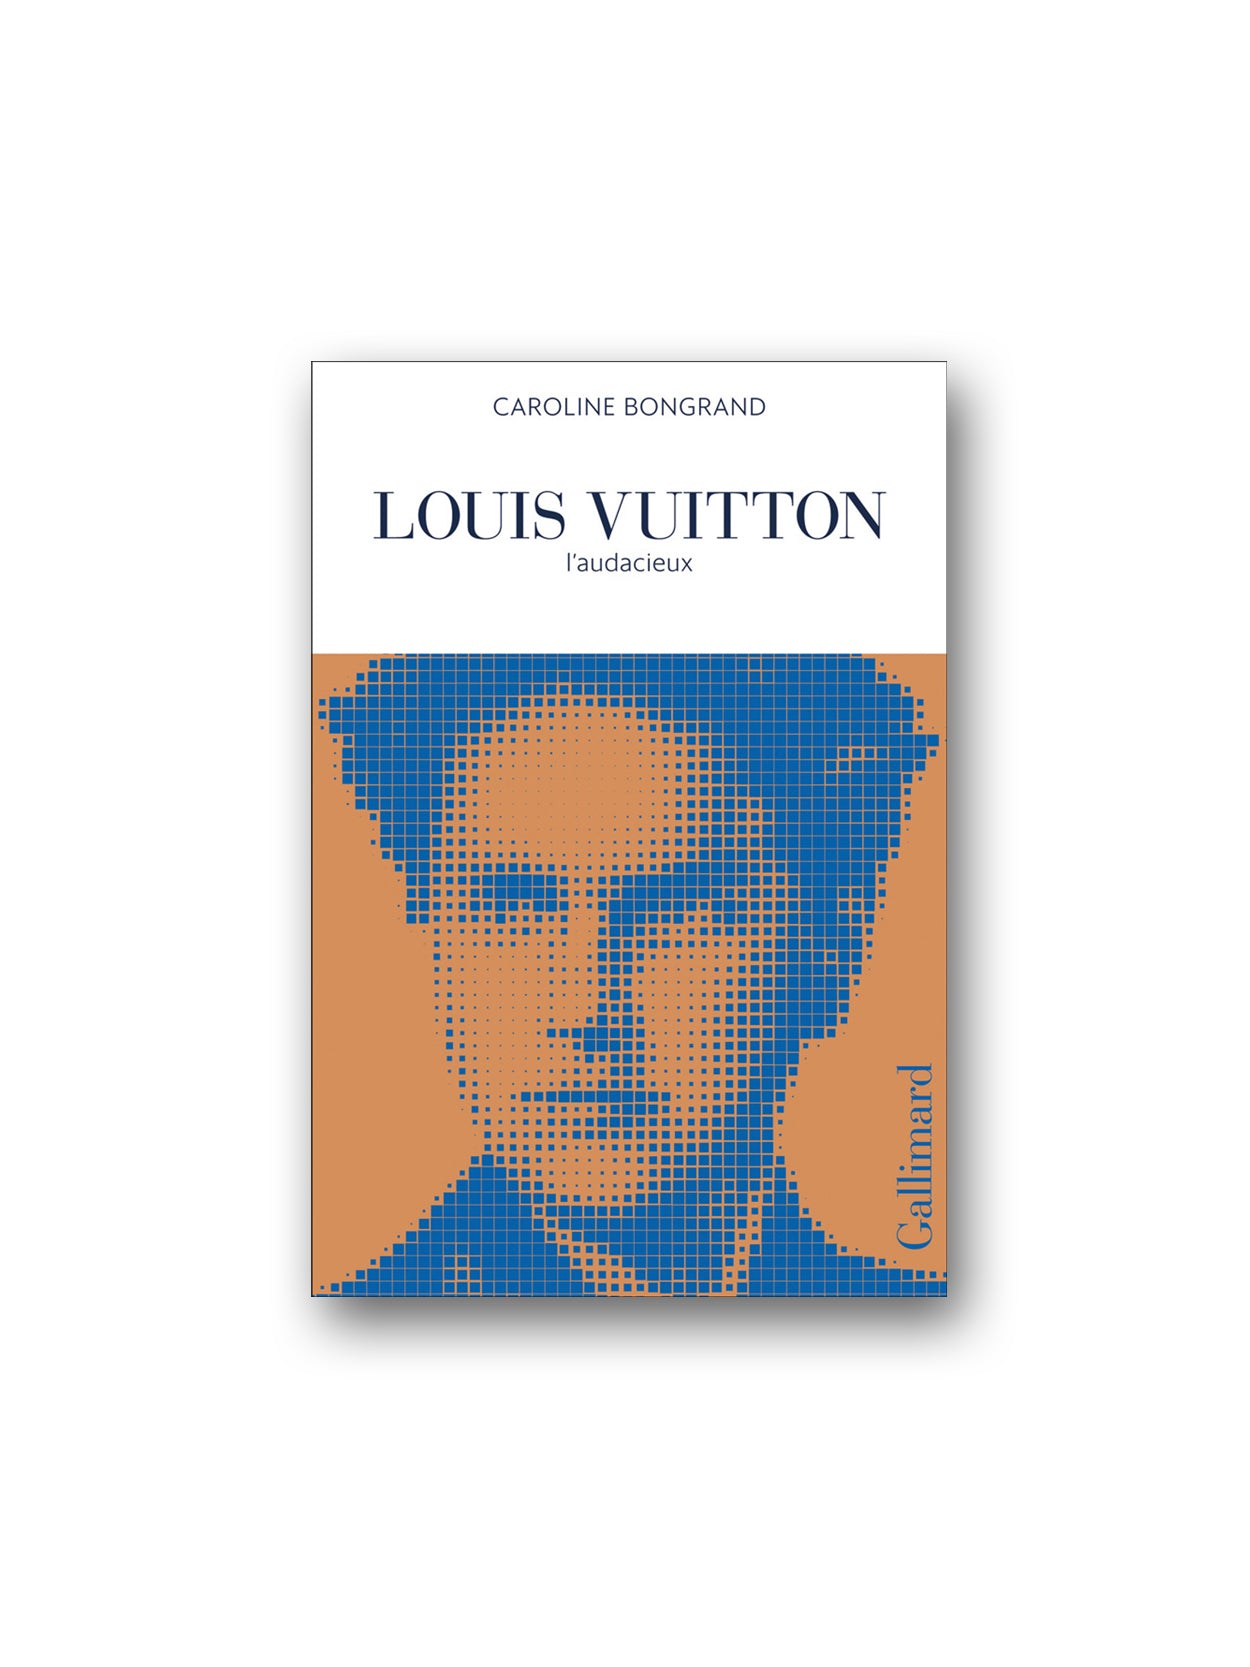  Louis Vuitton: L'audacieux - Bongrand, Caroline - Livres